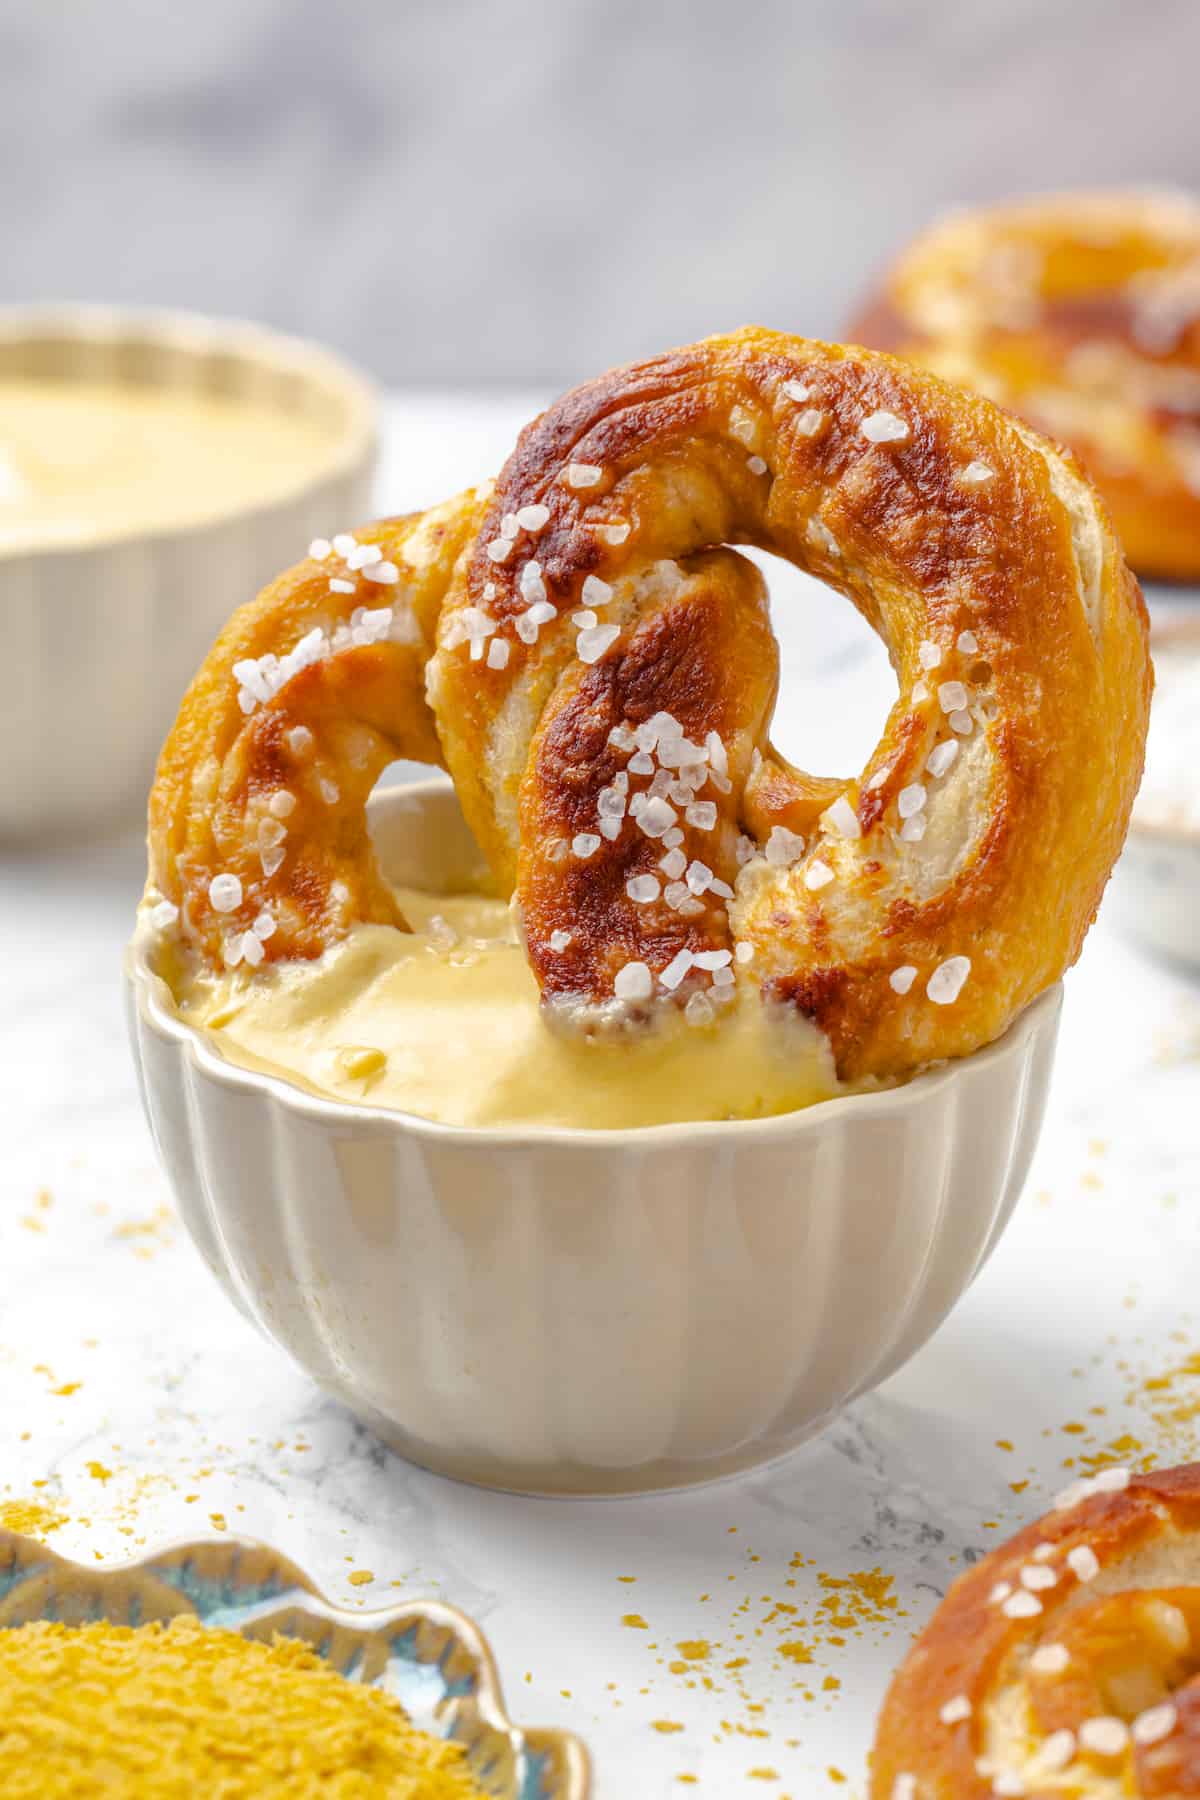 Soft pretzel being dipped into bowl of pretzel dip